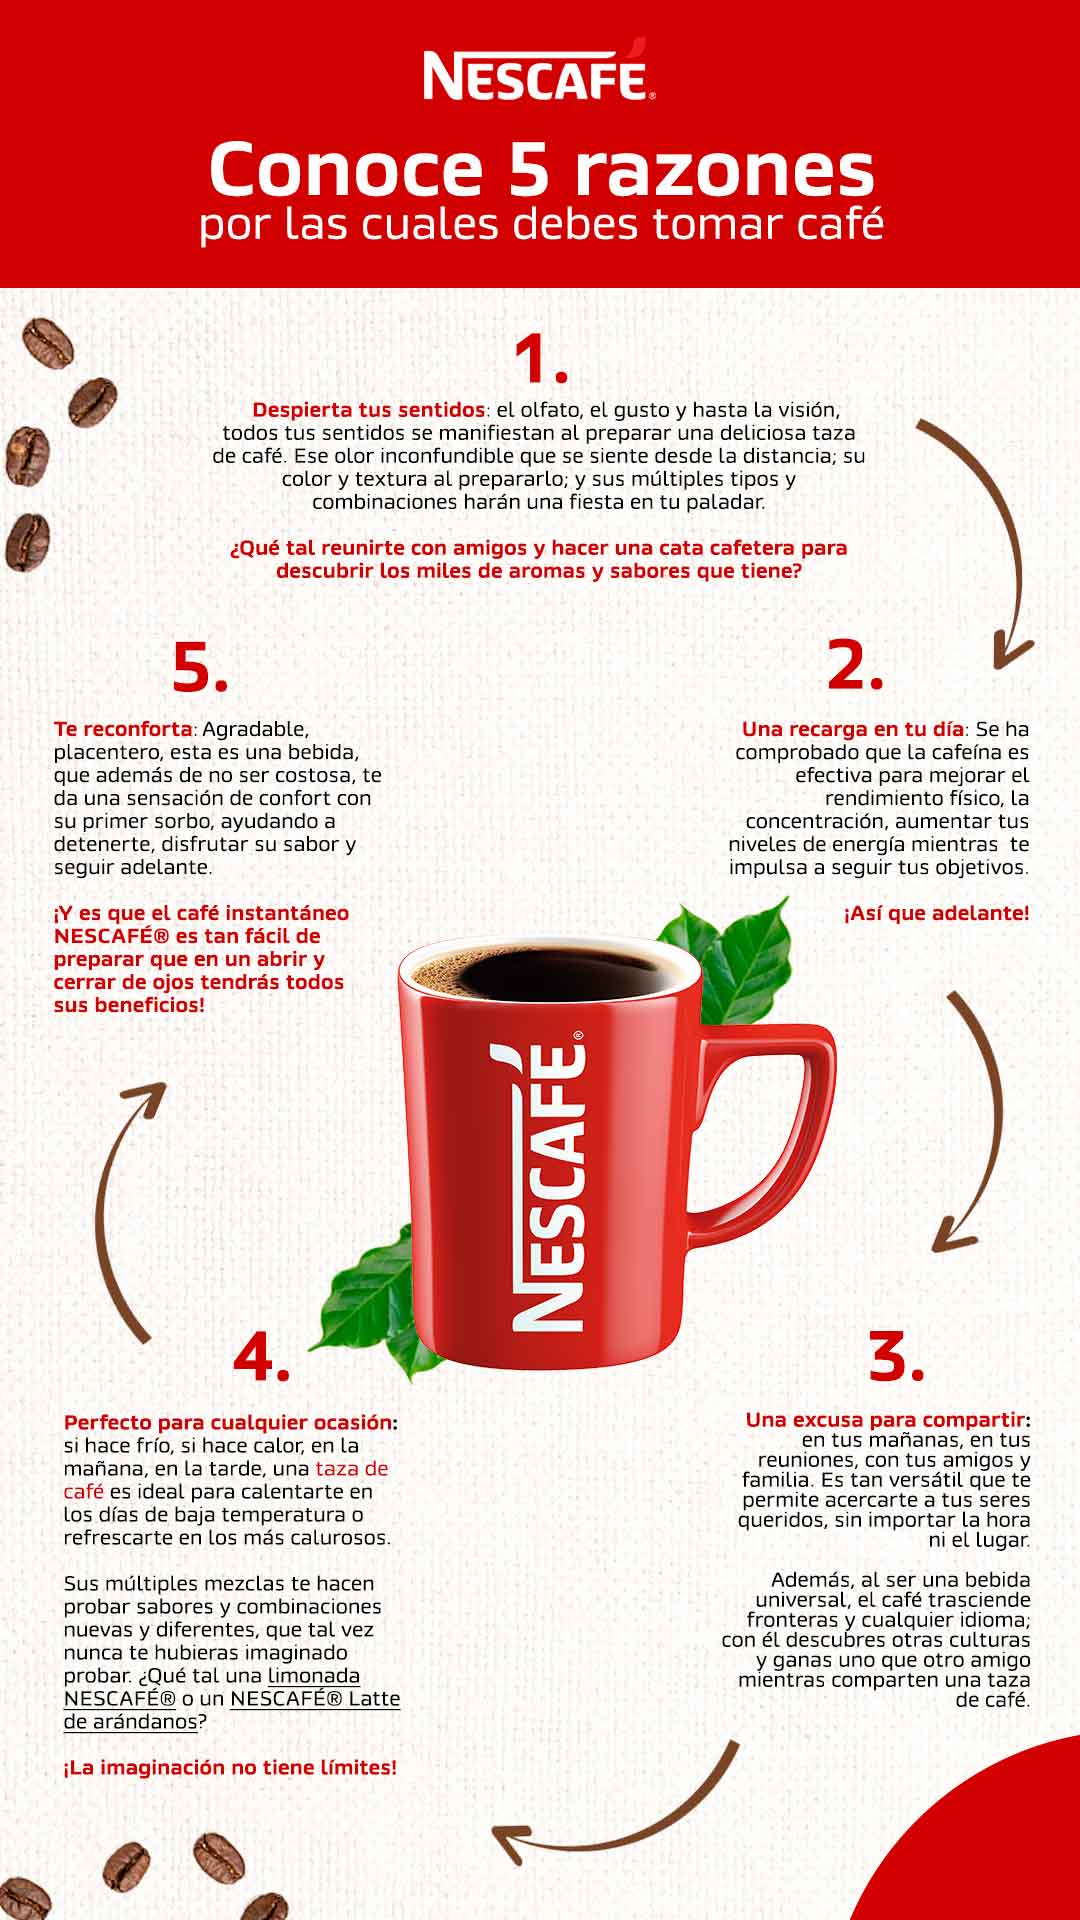 Nescafe_Razones para tomar cafe_infografia